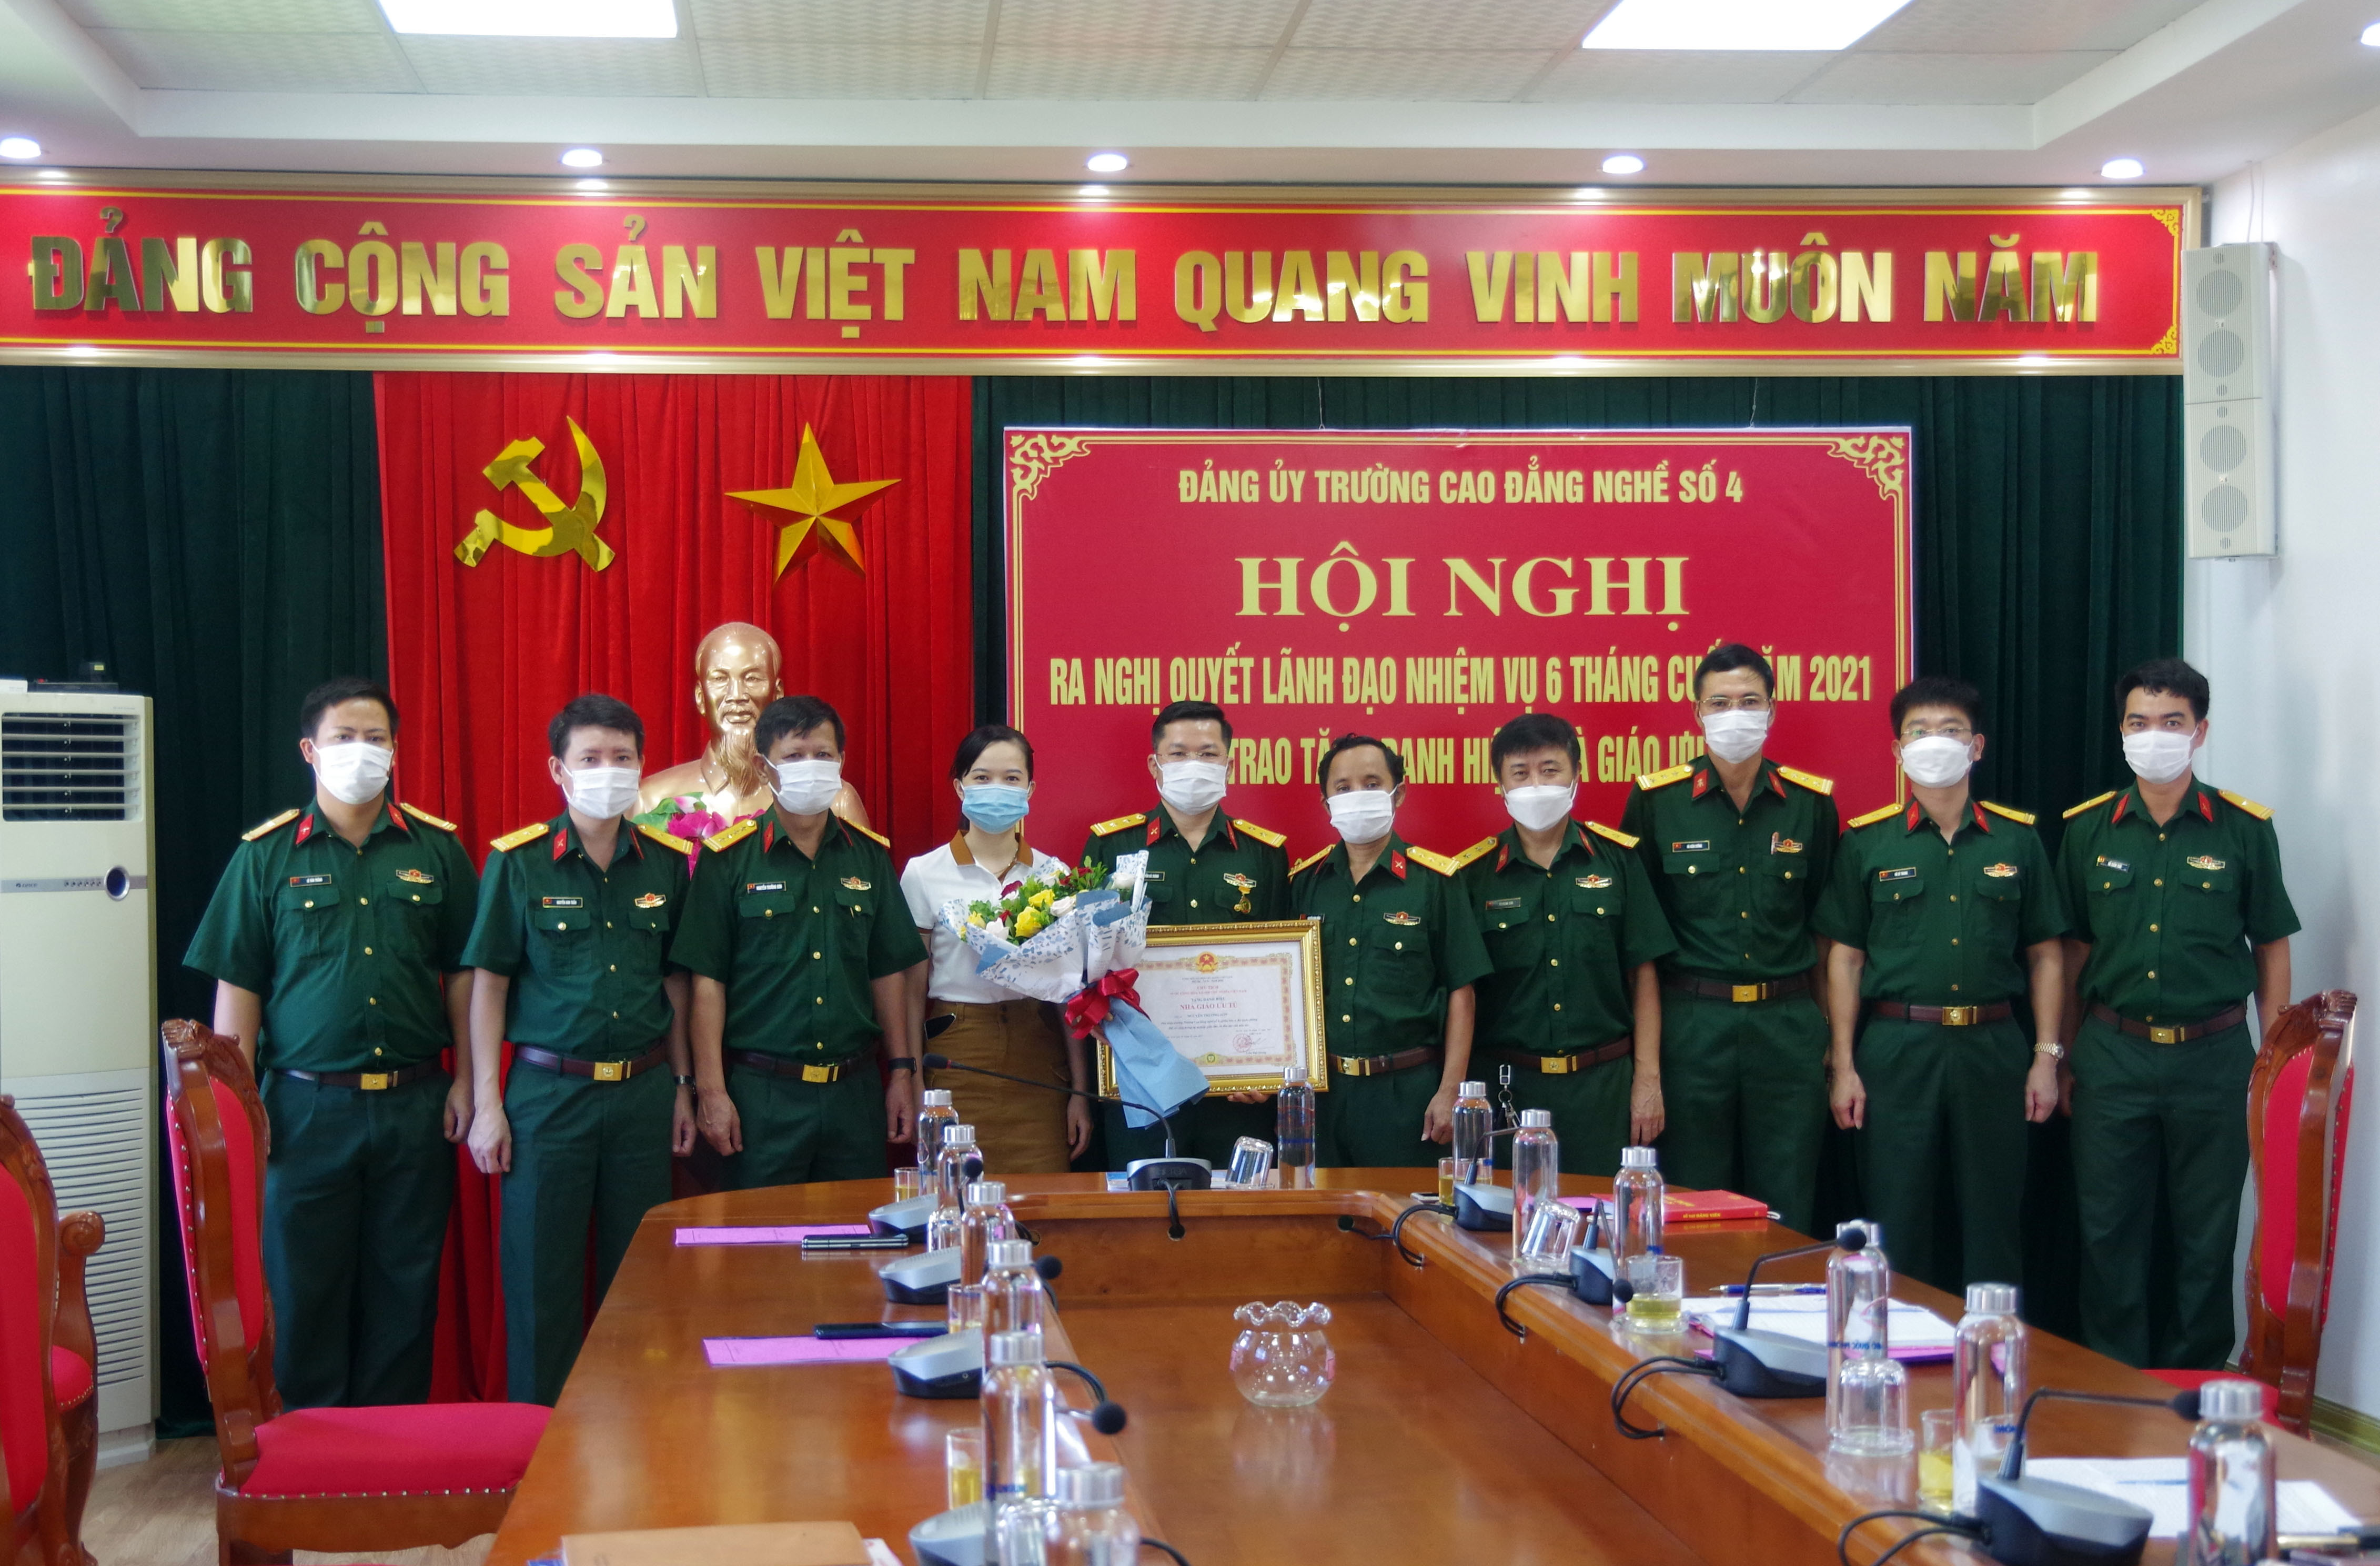 Ban giám hiệu và các đồng nghiệp tặng hoa chúc mừng Nhà giáo ưu tú Nguyễn Bá Thành. Ảnh: Nguyễn Tình